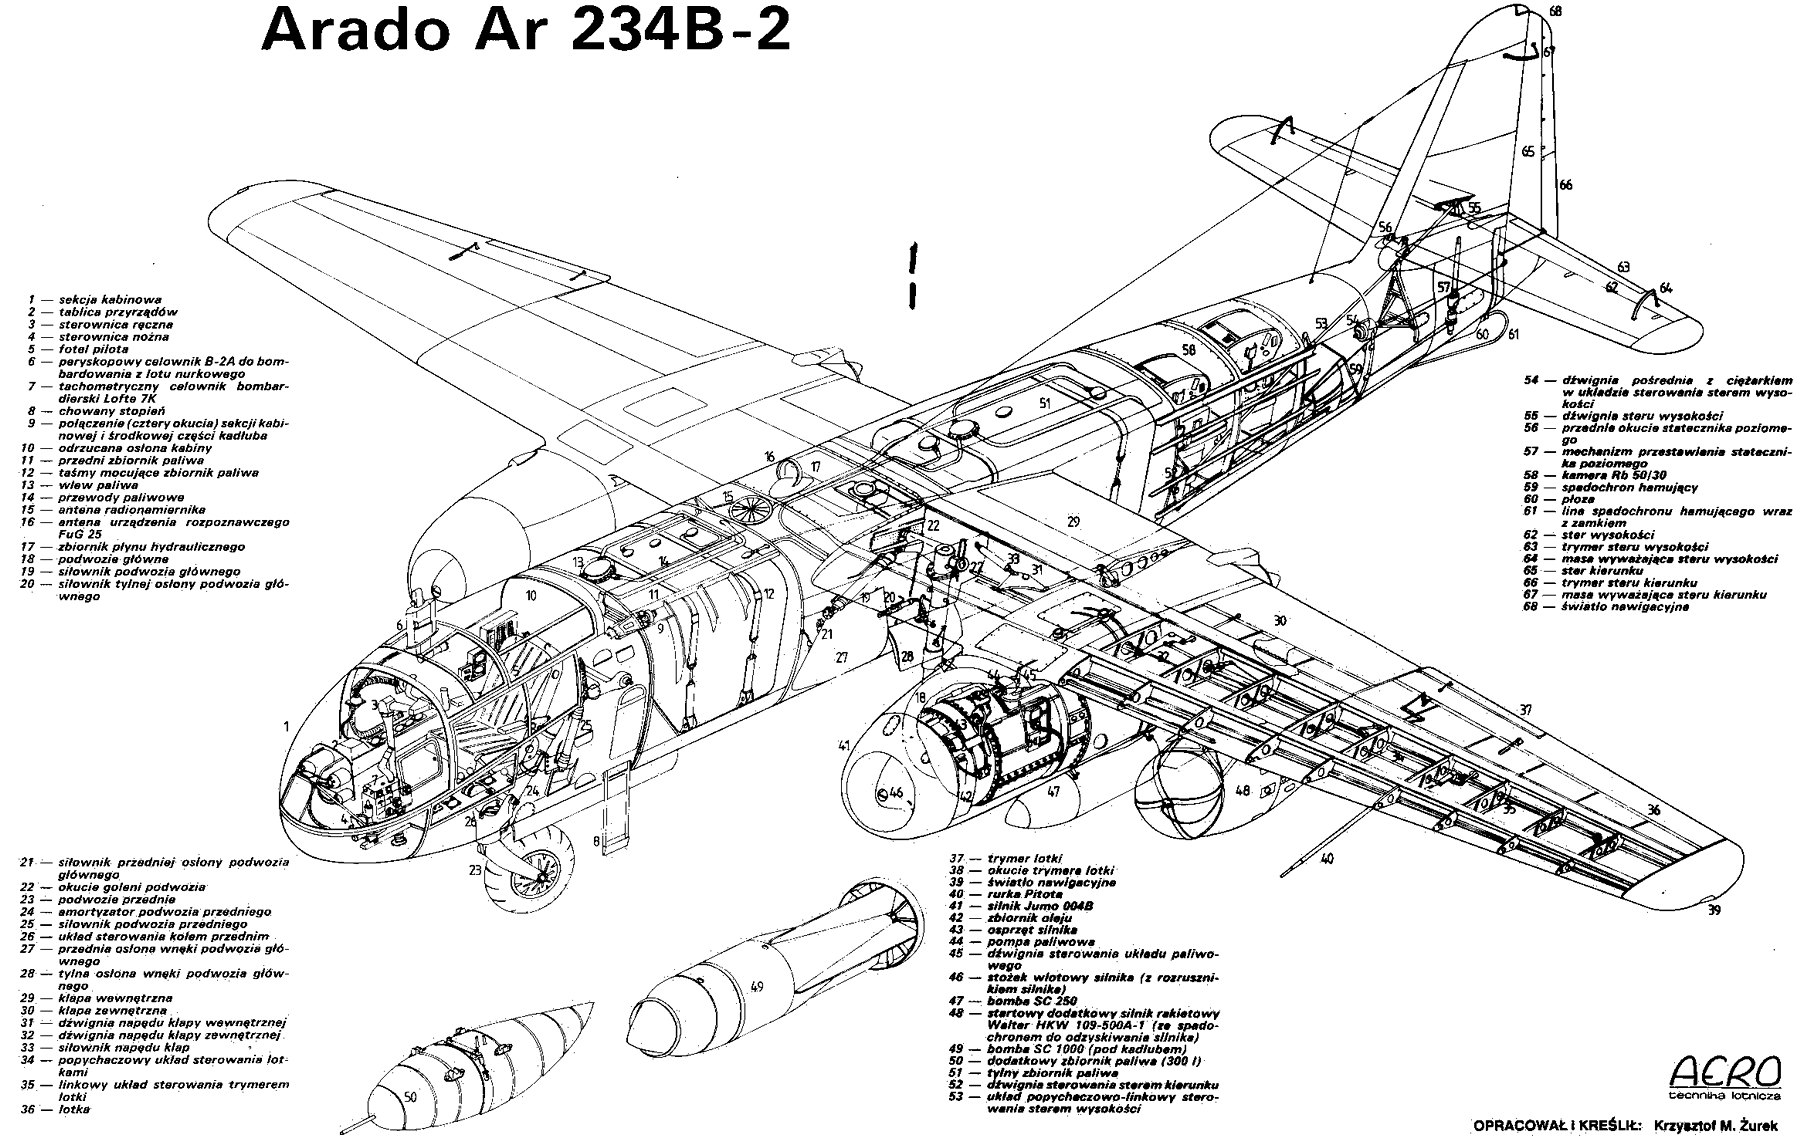 Arado Ar 234 blueprint